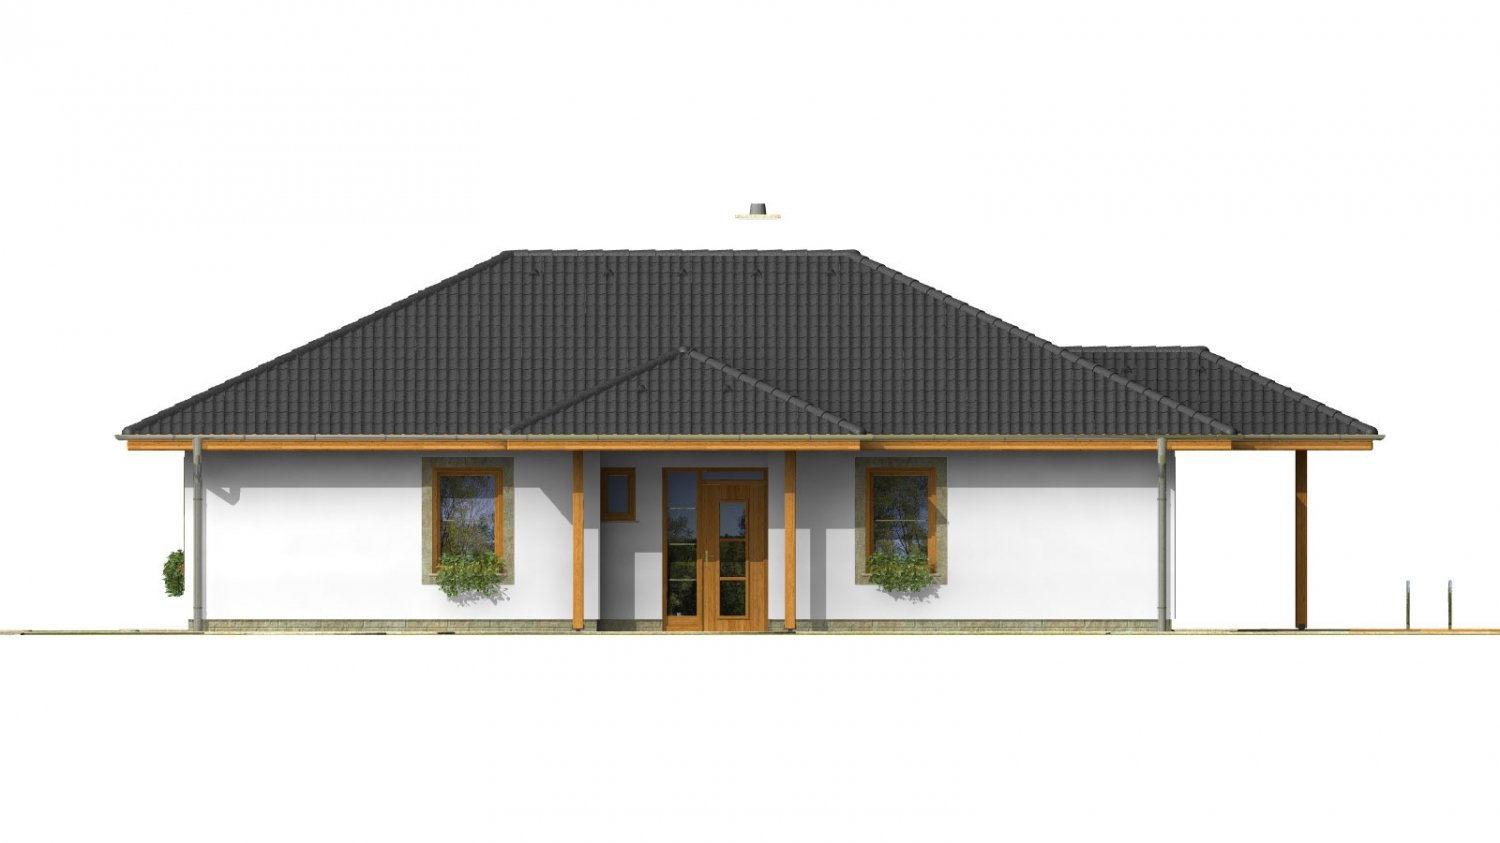 Zrkadlový pohľad 1. - Klasický projekt přízemního rodinného domu s valbovými střechami, vhodný i na užší pozemek.